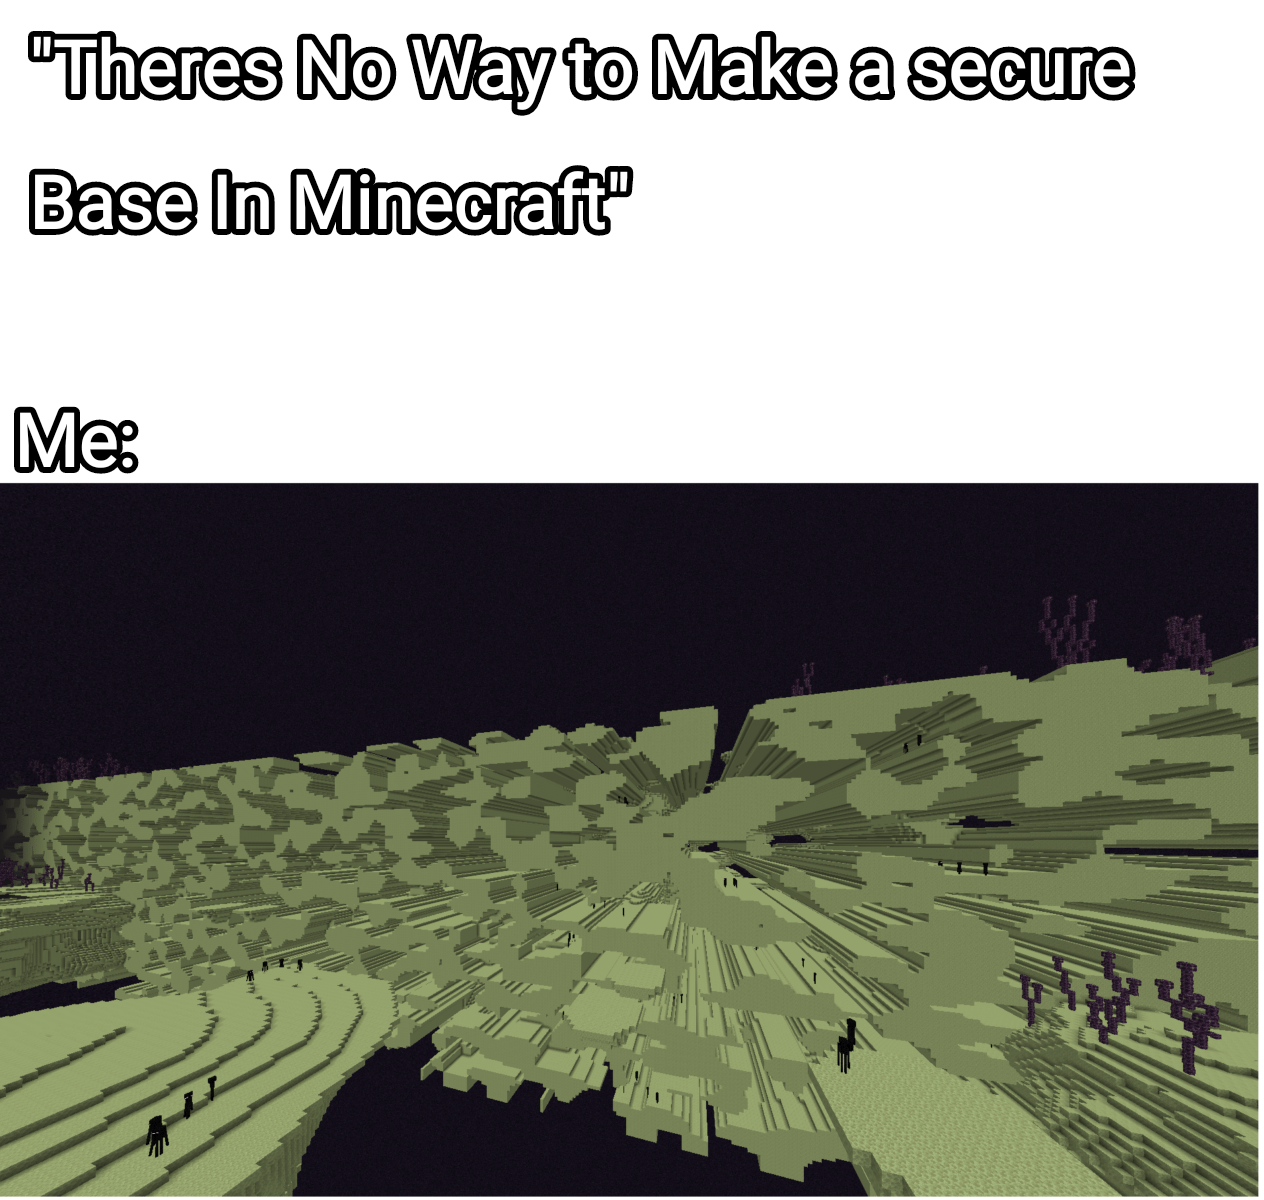 Minecraft Memes - "14k elytras? Git Gud, Scrub"